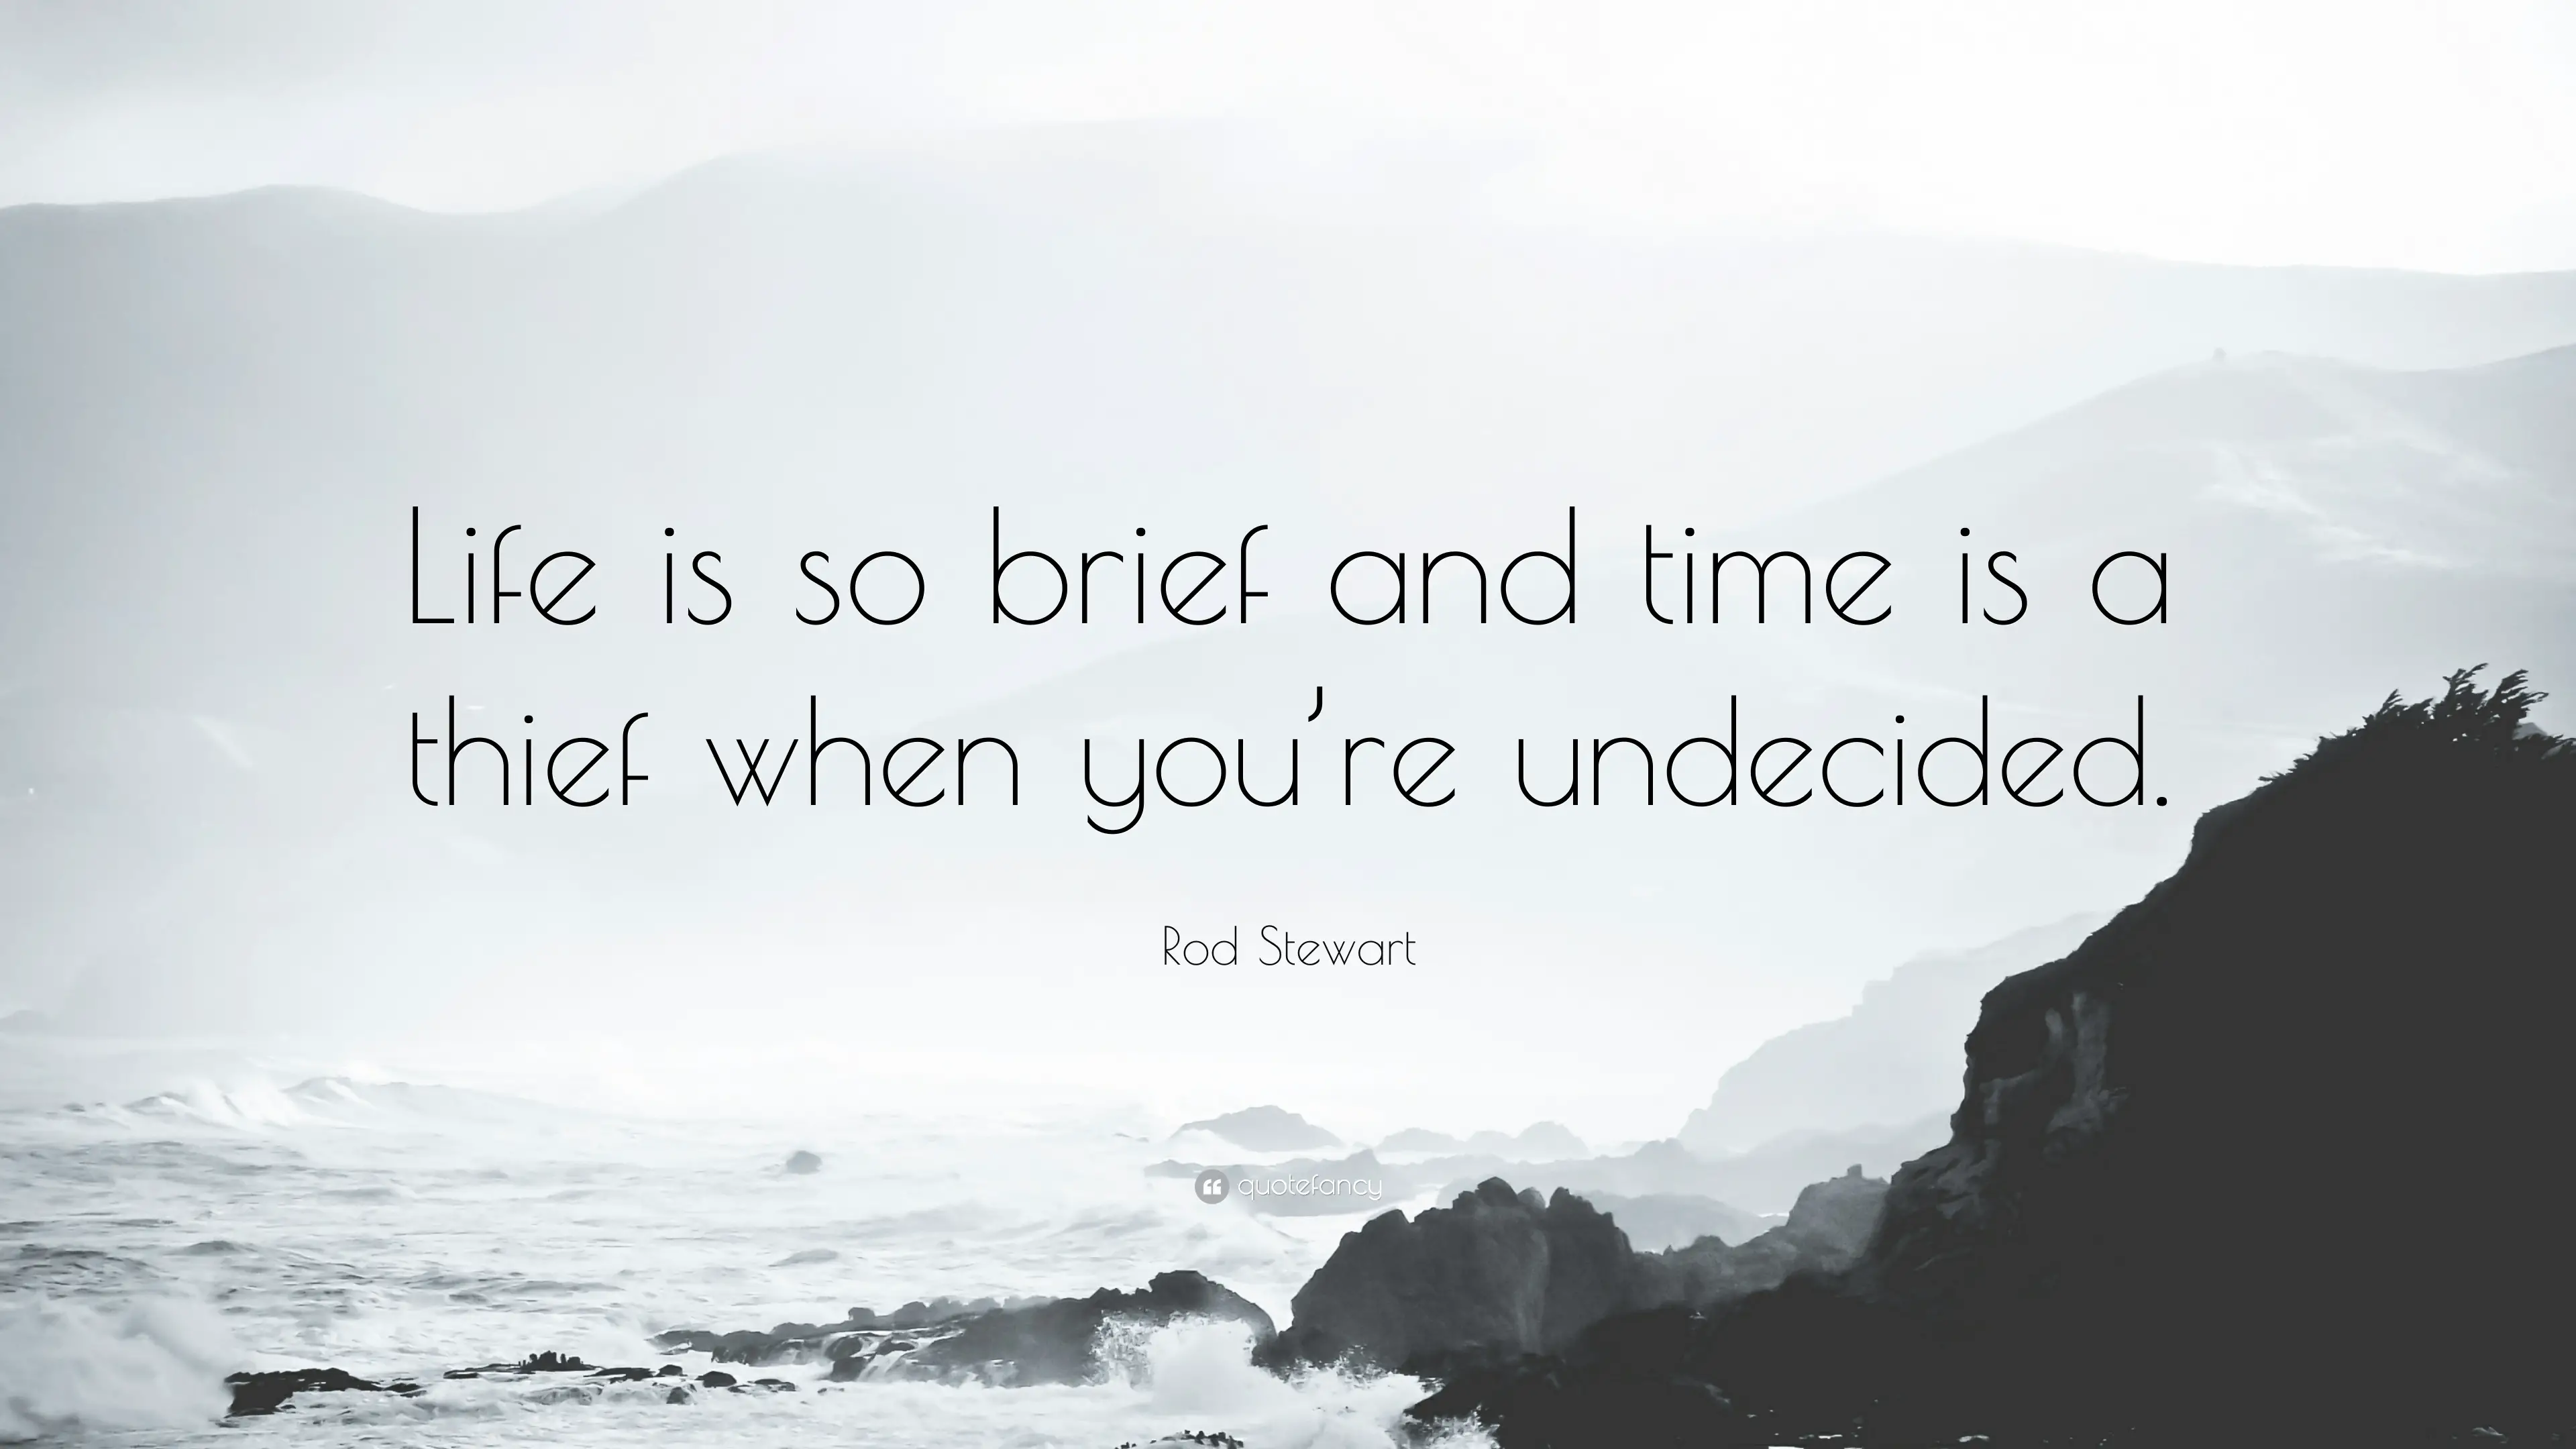 10 Best Rod Stewart Quotes